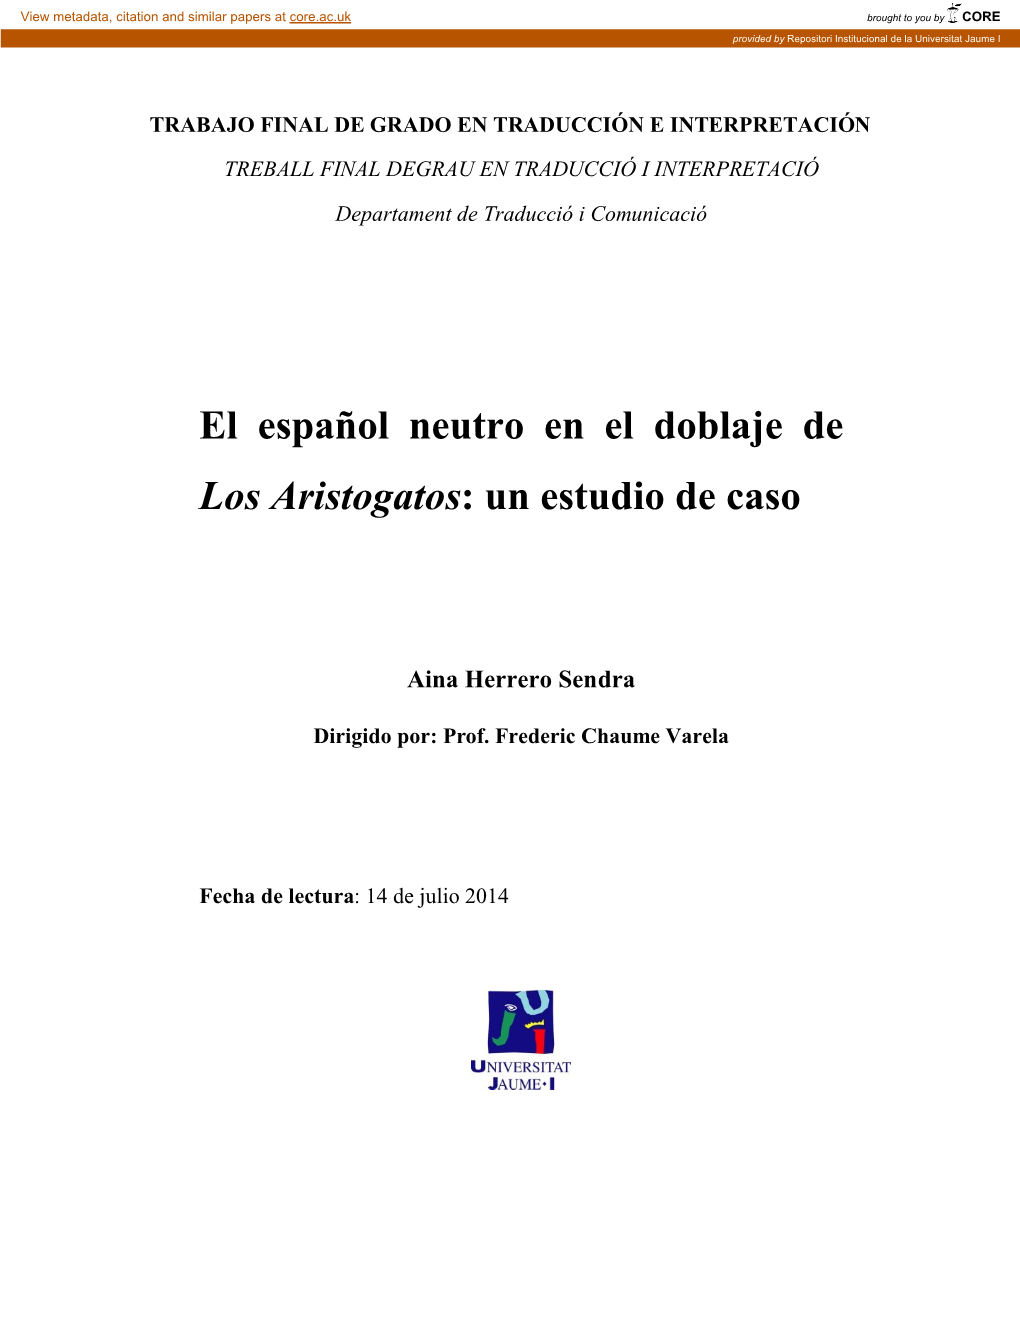 El Español Neutro En El Doblaje De Los Aristogatos: Un Estudio De Caso